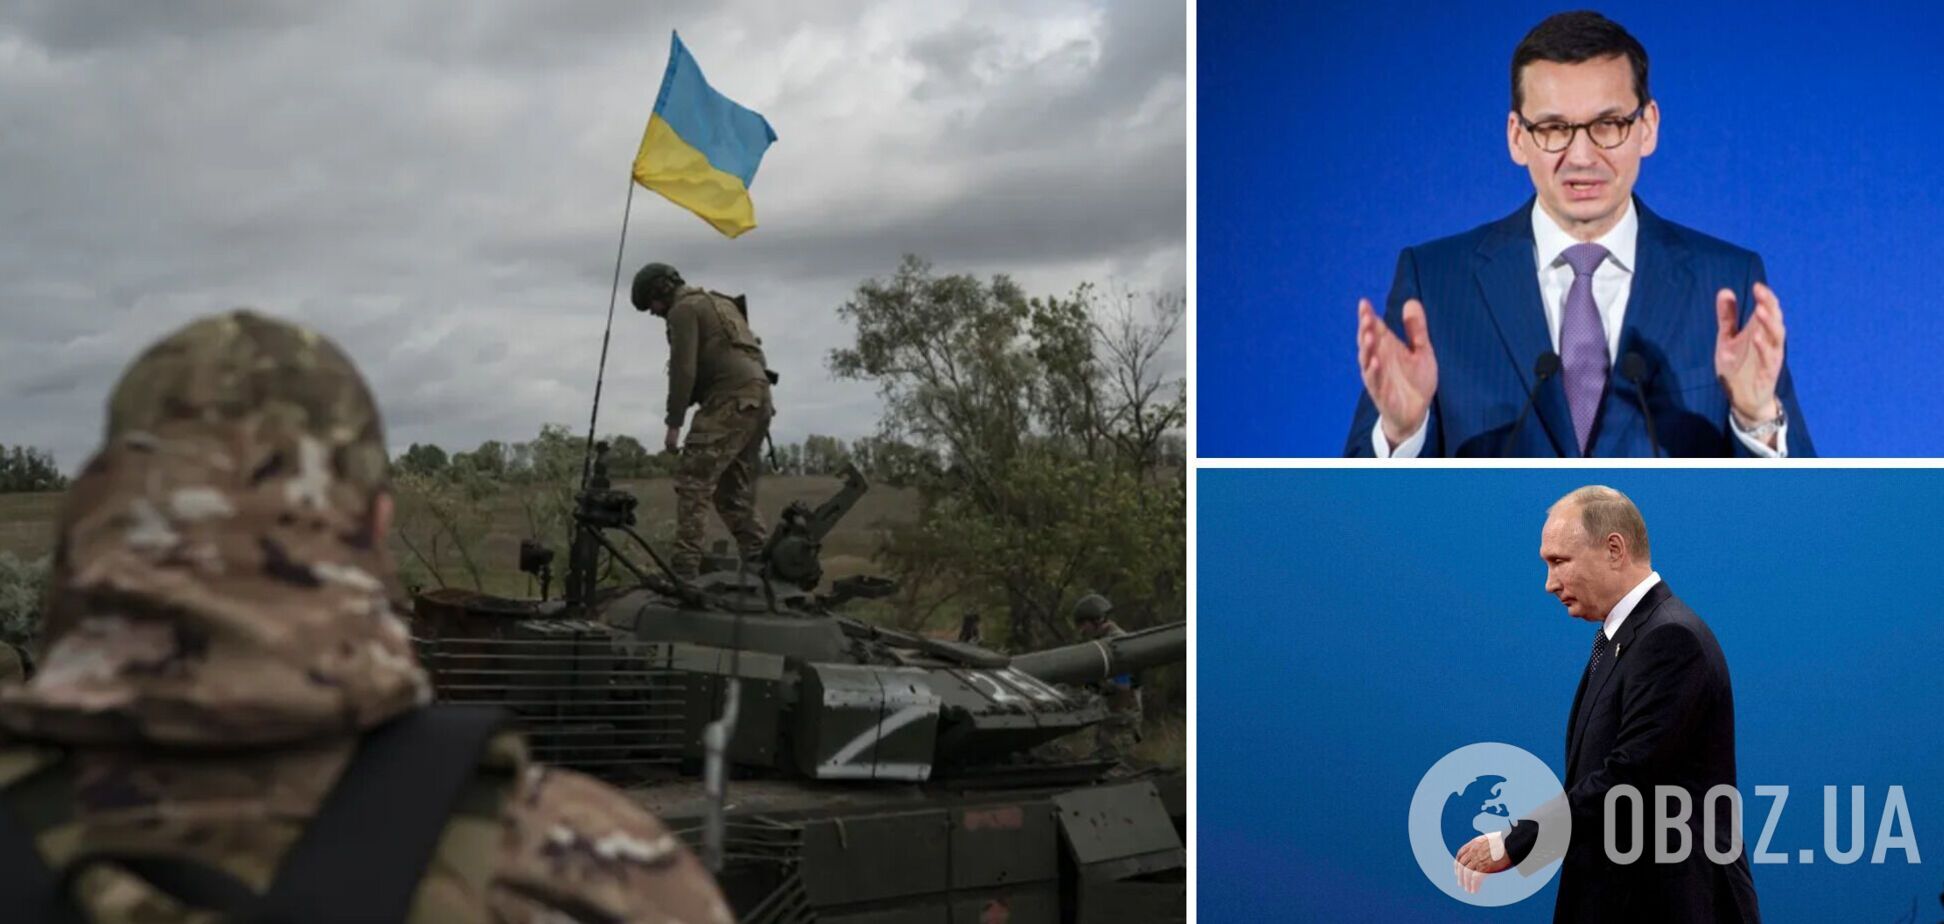 Режим Путина слабеет с каждым днем, чаша весов победы склоняется на сторону Украины, – Моравецкий